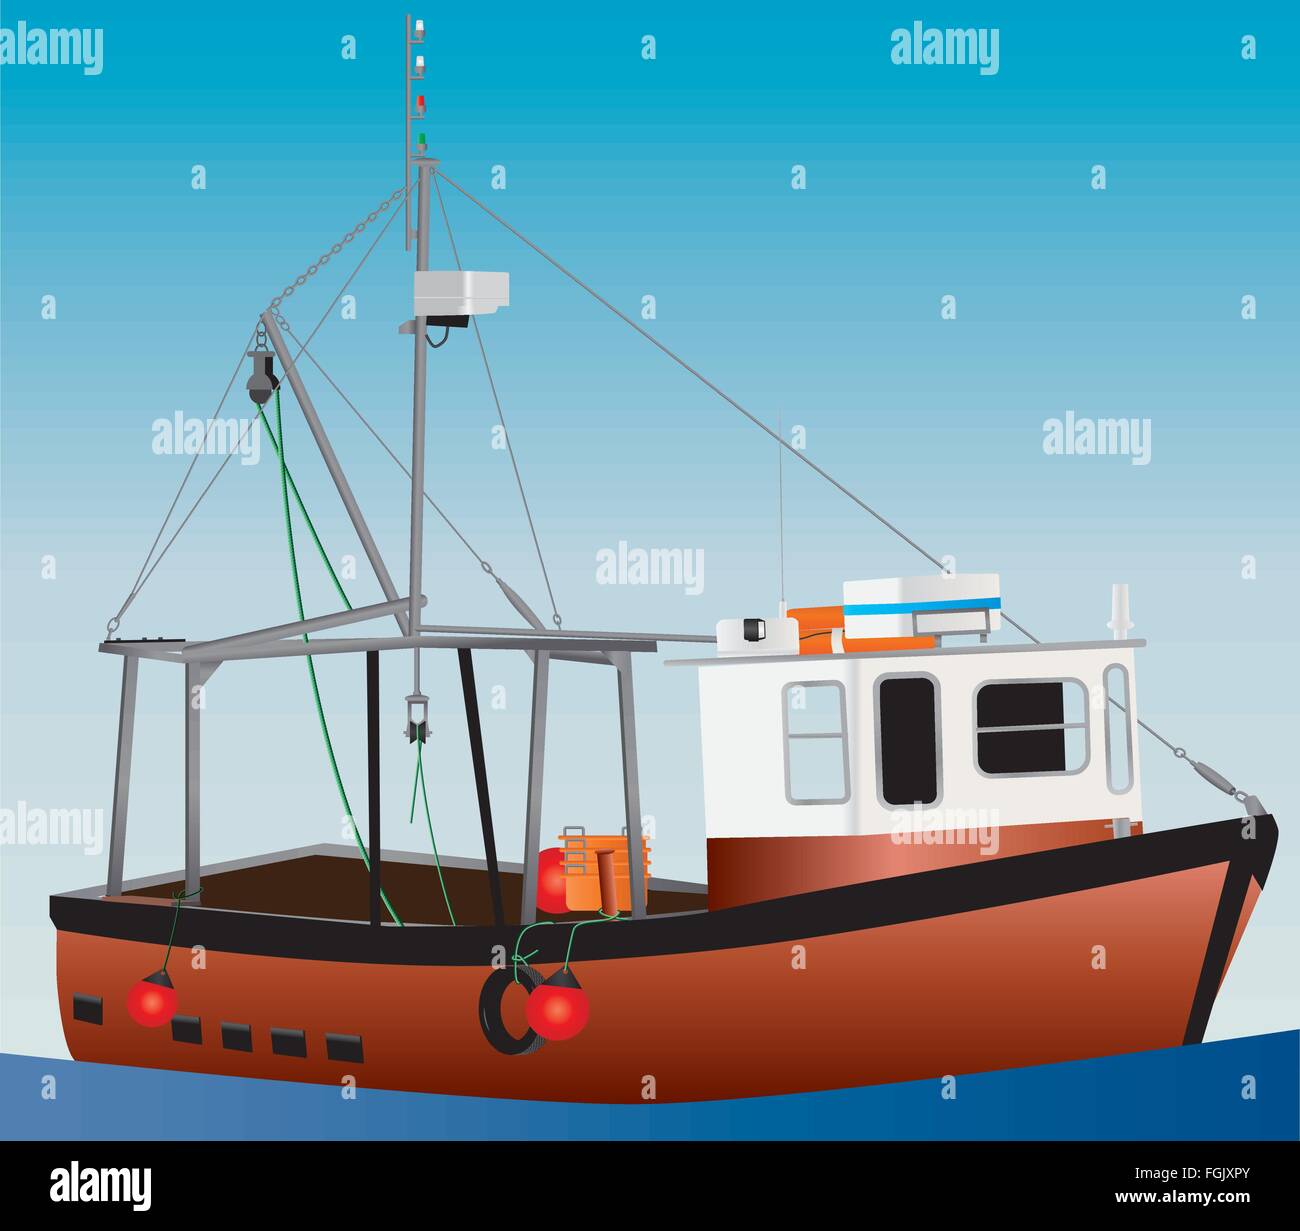 Una illustrazione dettagliata di un arancio e bianco in acque costiere barca da pesca con reti verricelli e zattere di salvataggio ed un cielo blu sullo sfondo di un mare calmo Illustrazione Vettoriale